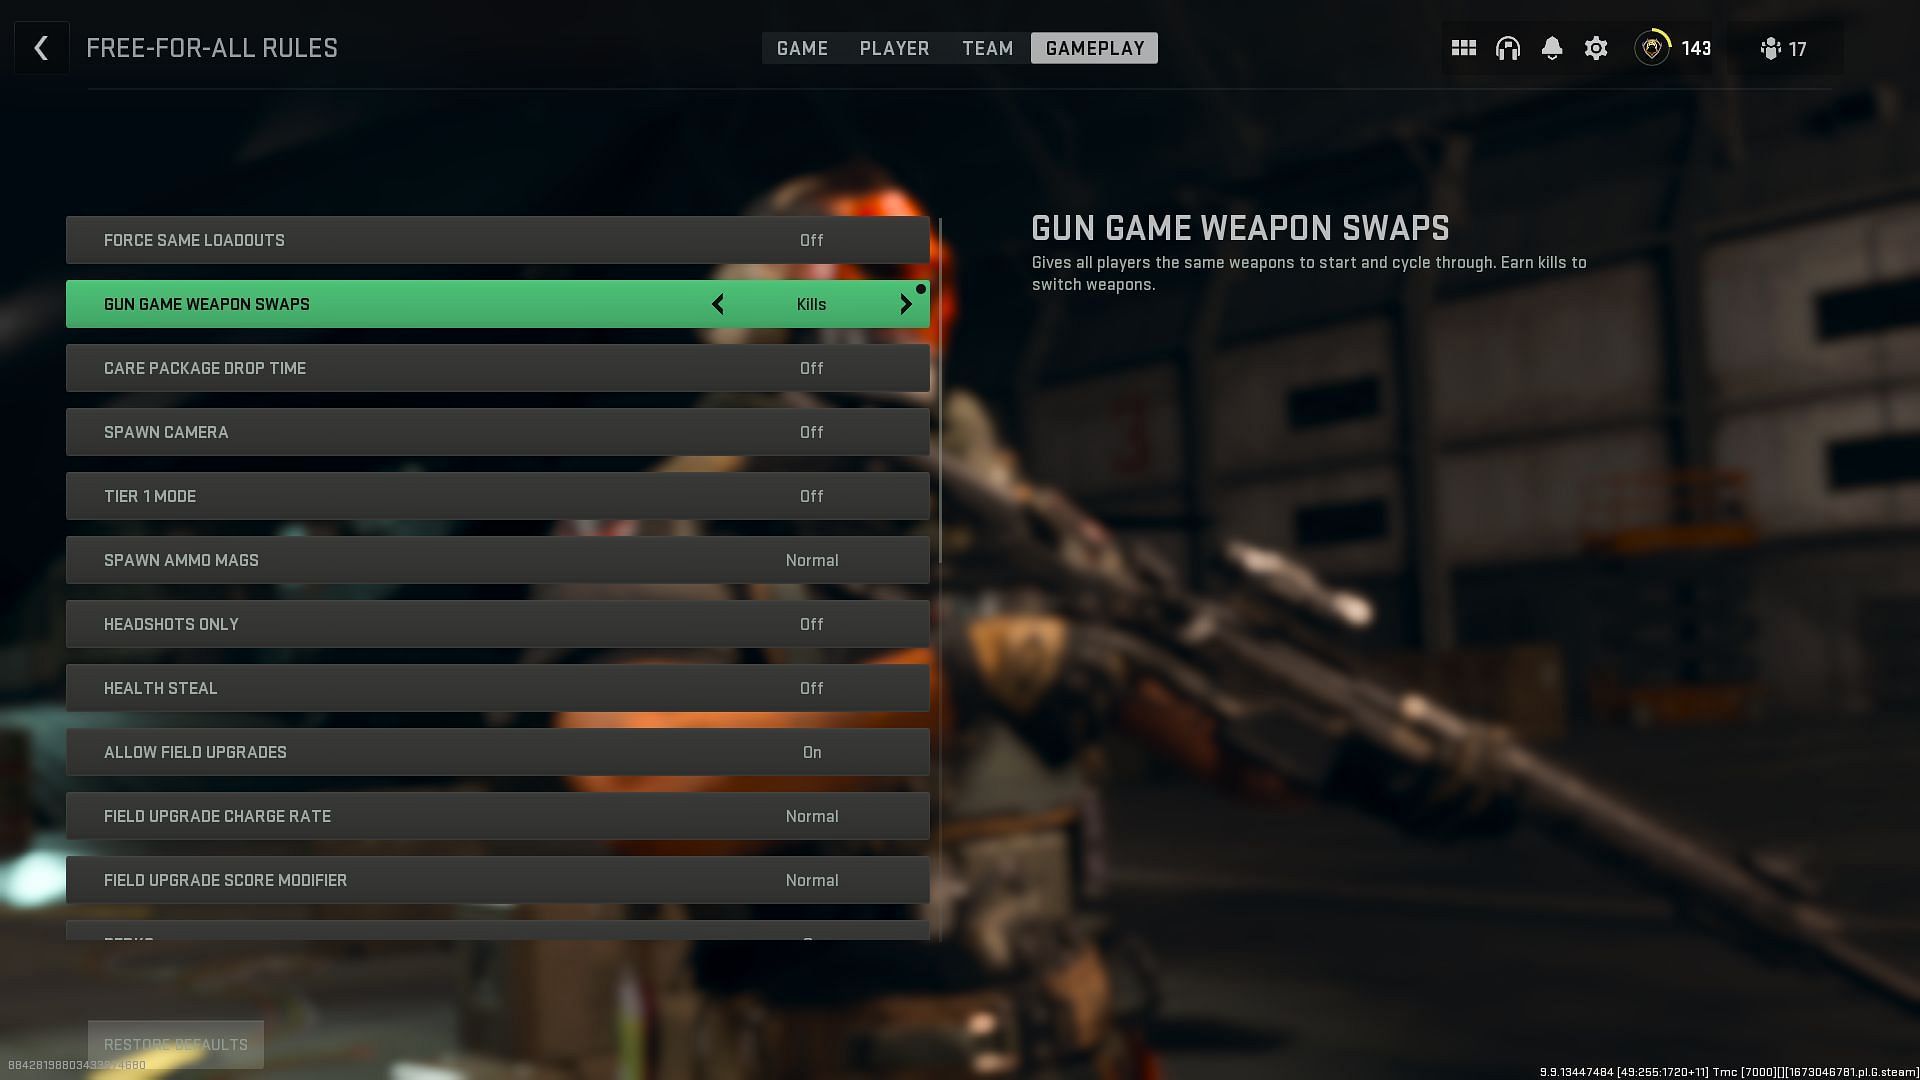 Enabling Gun Game Weapon Swaps (Image via Activision)